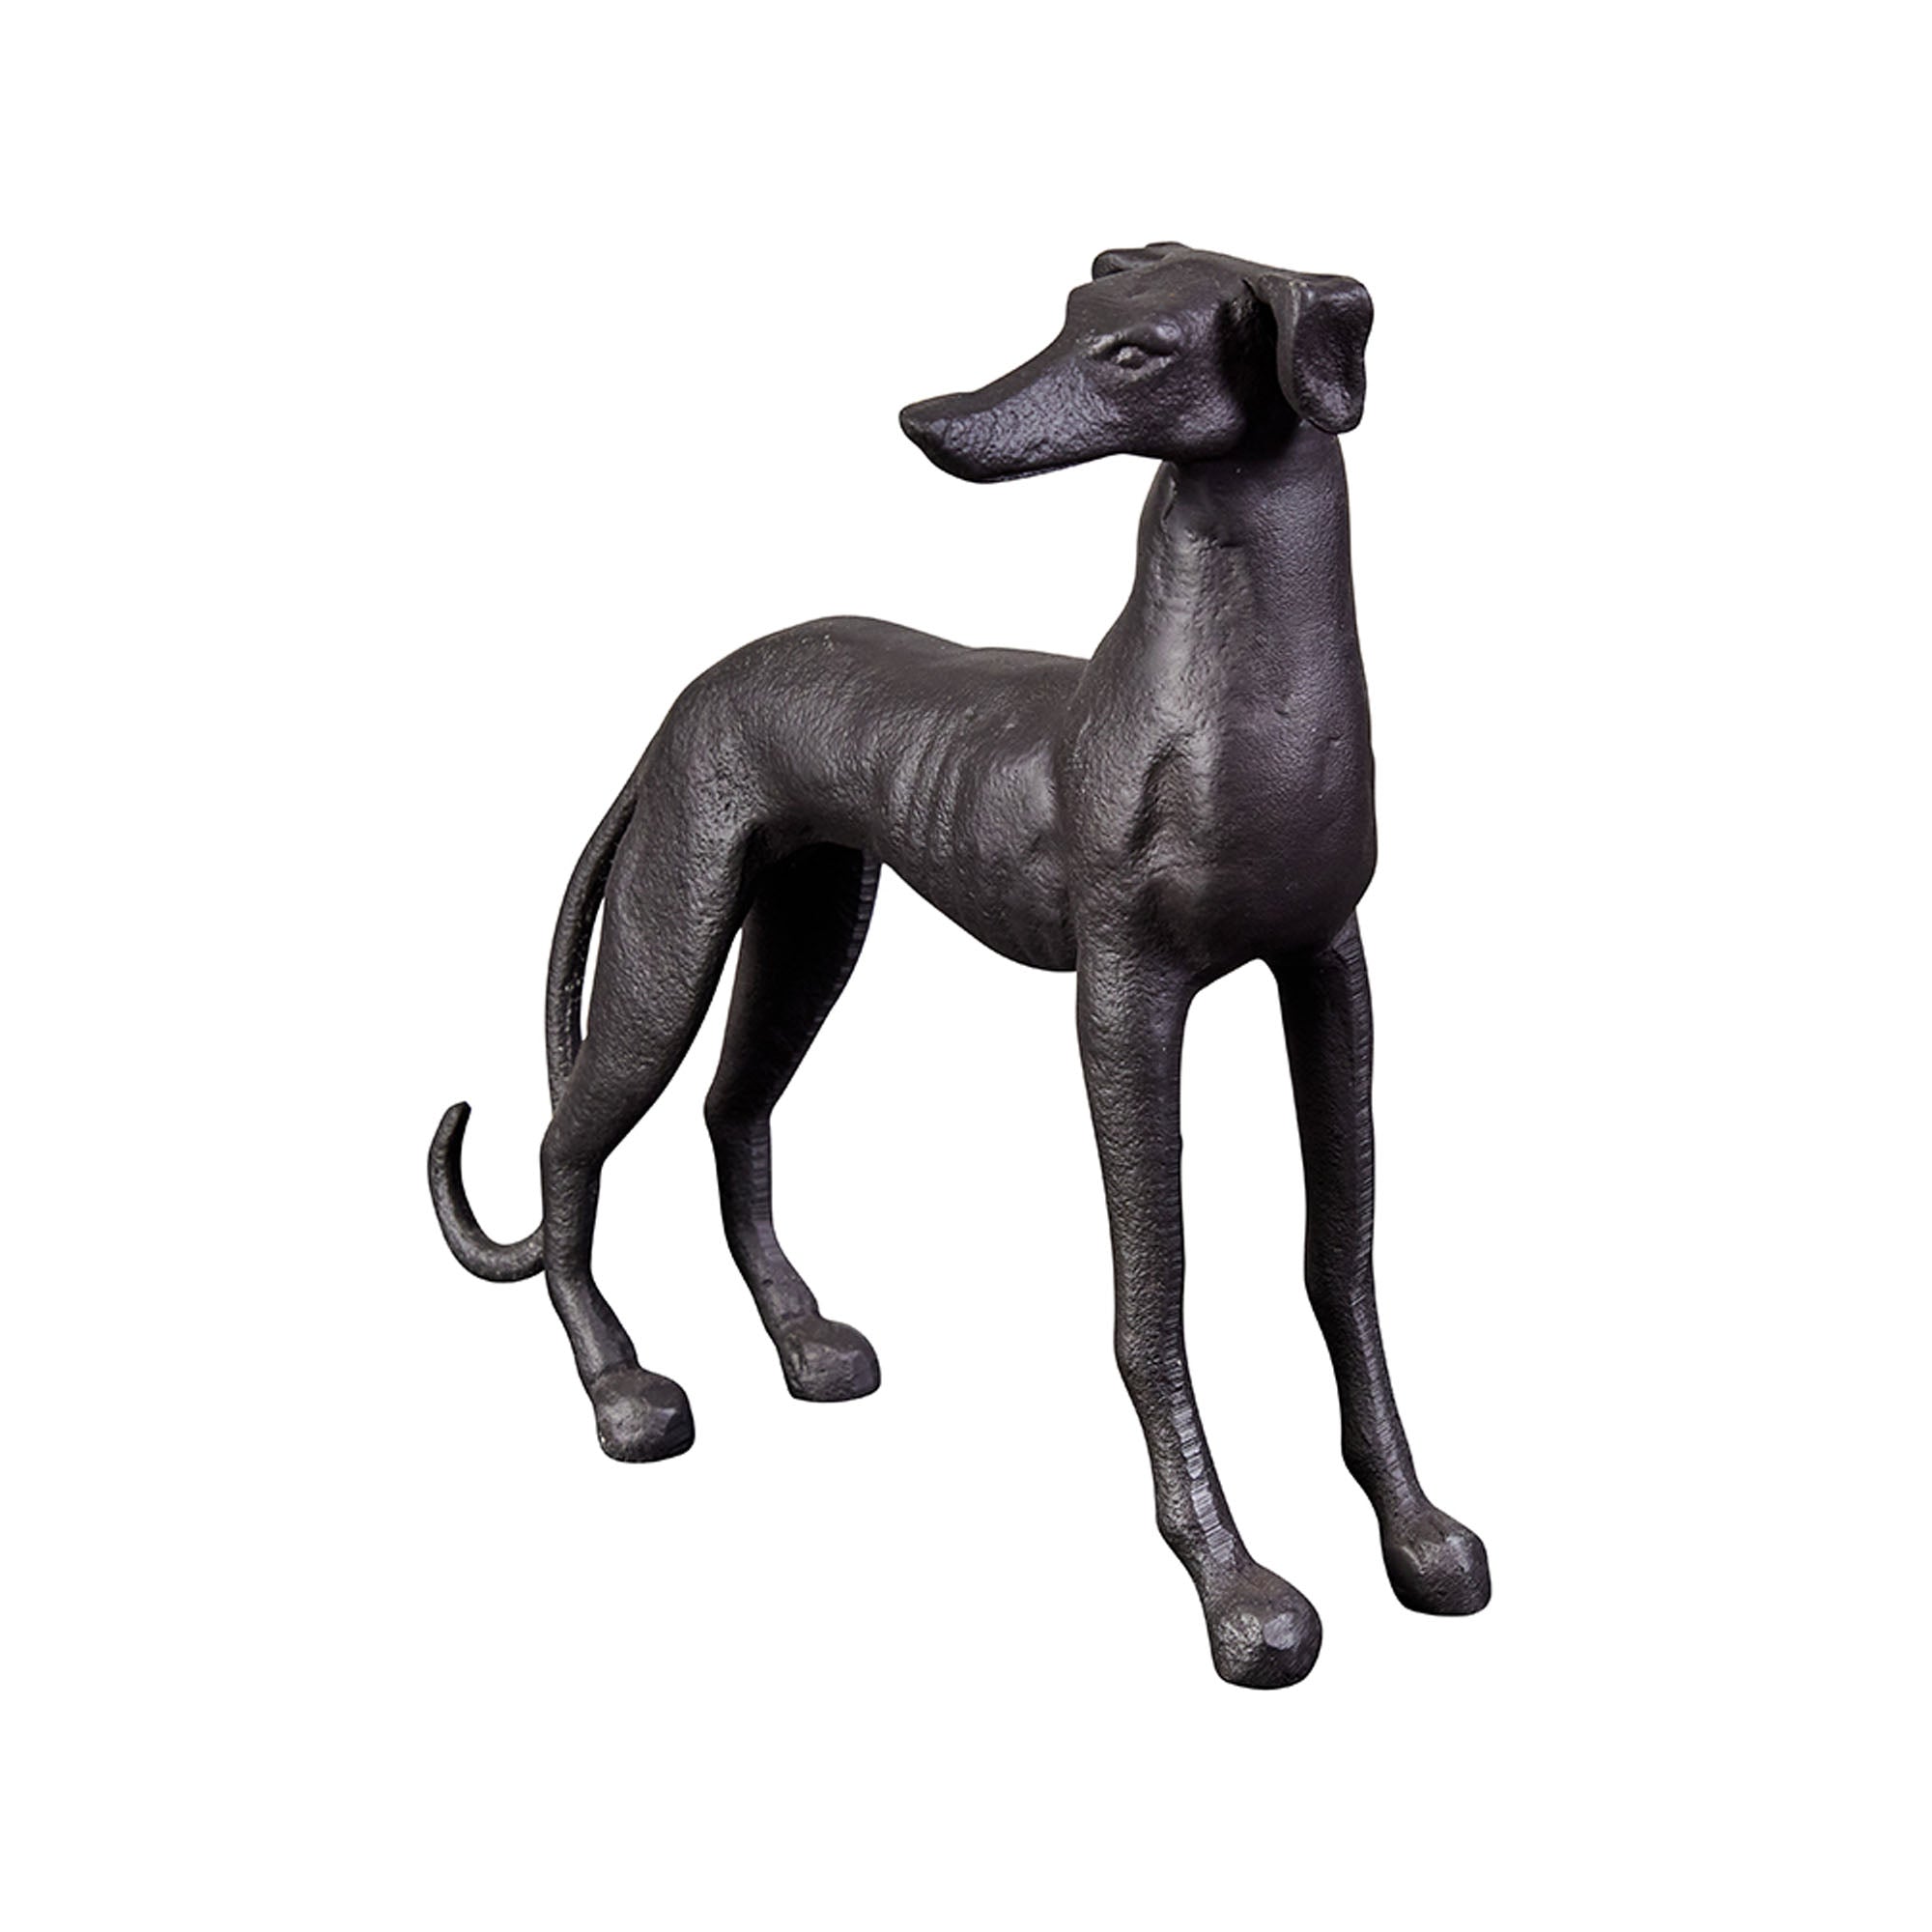 Rudi Greyhound Sculpture Bronze